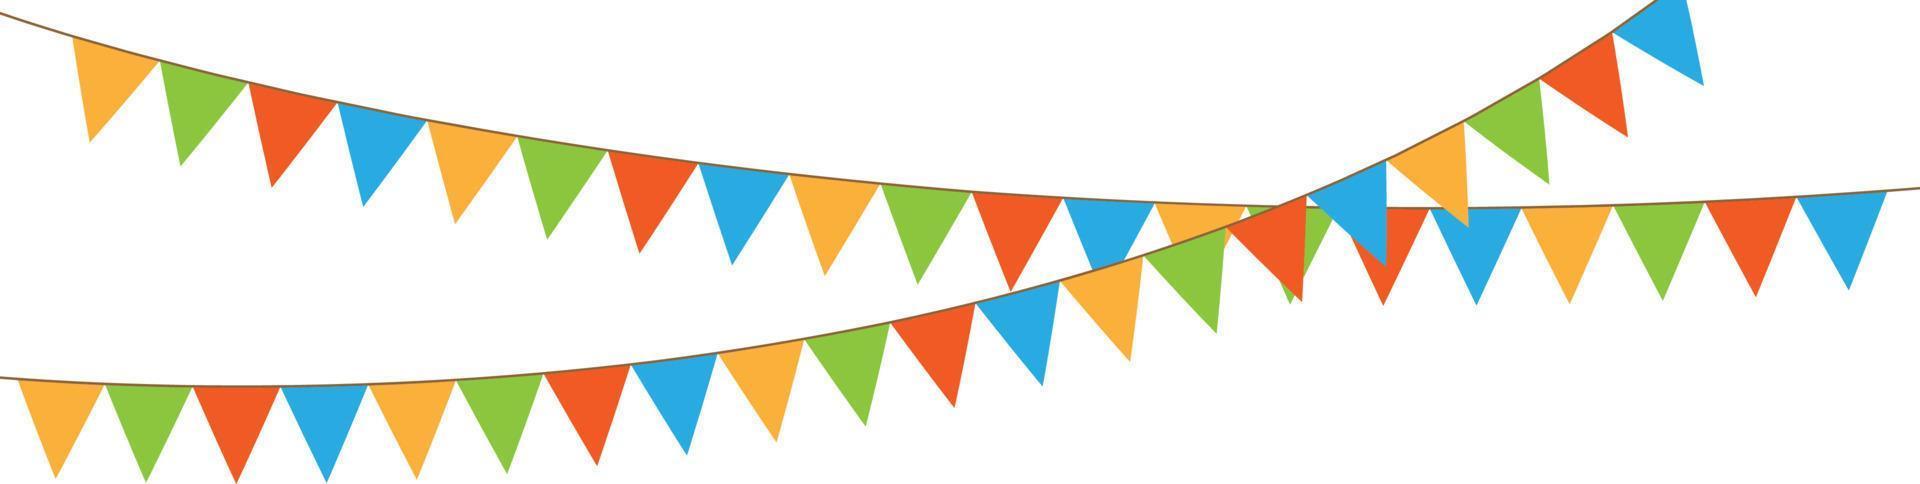 chaîne de fanions de fête colorée, guirlande de drapeaux, fond de vacances avec drapeaux colorés suspendus, illustration vectorielle vecteur